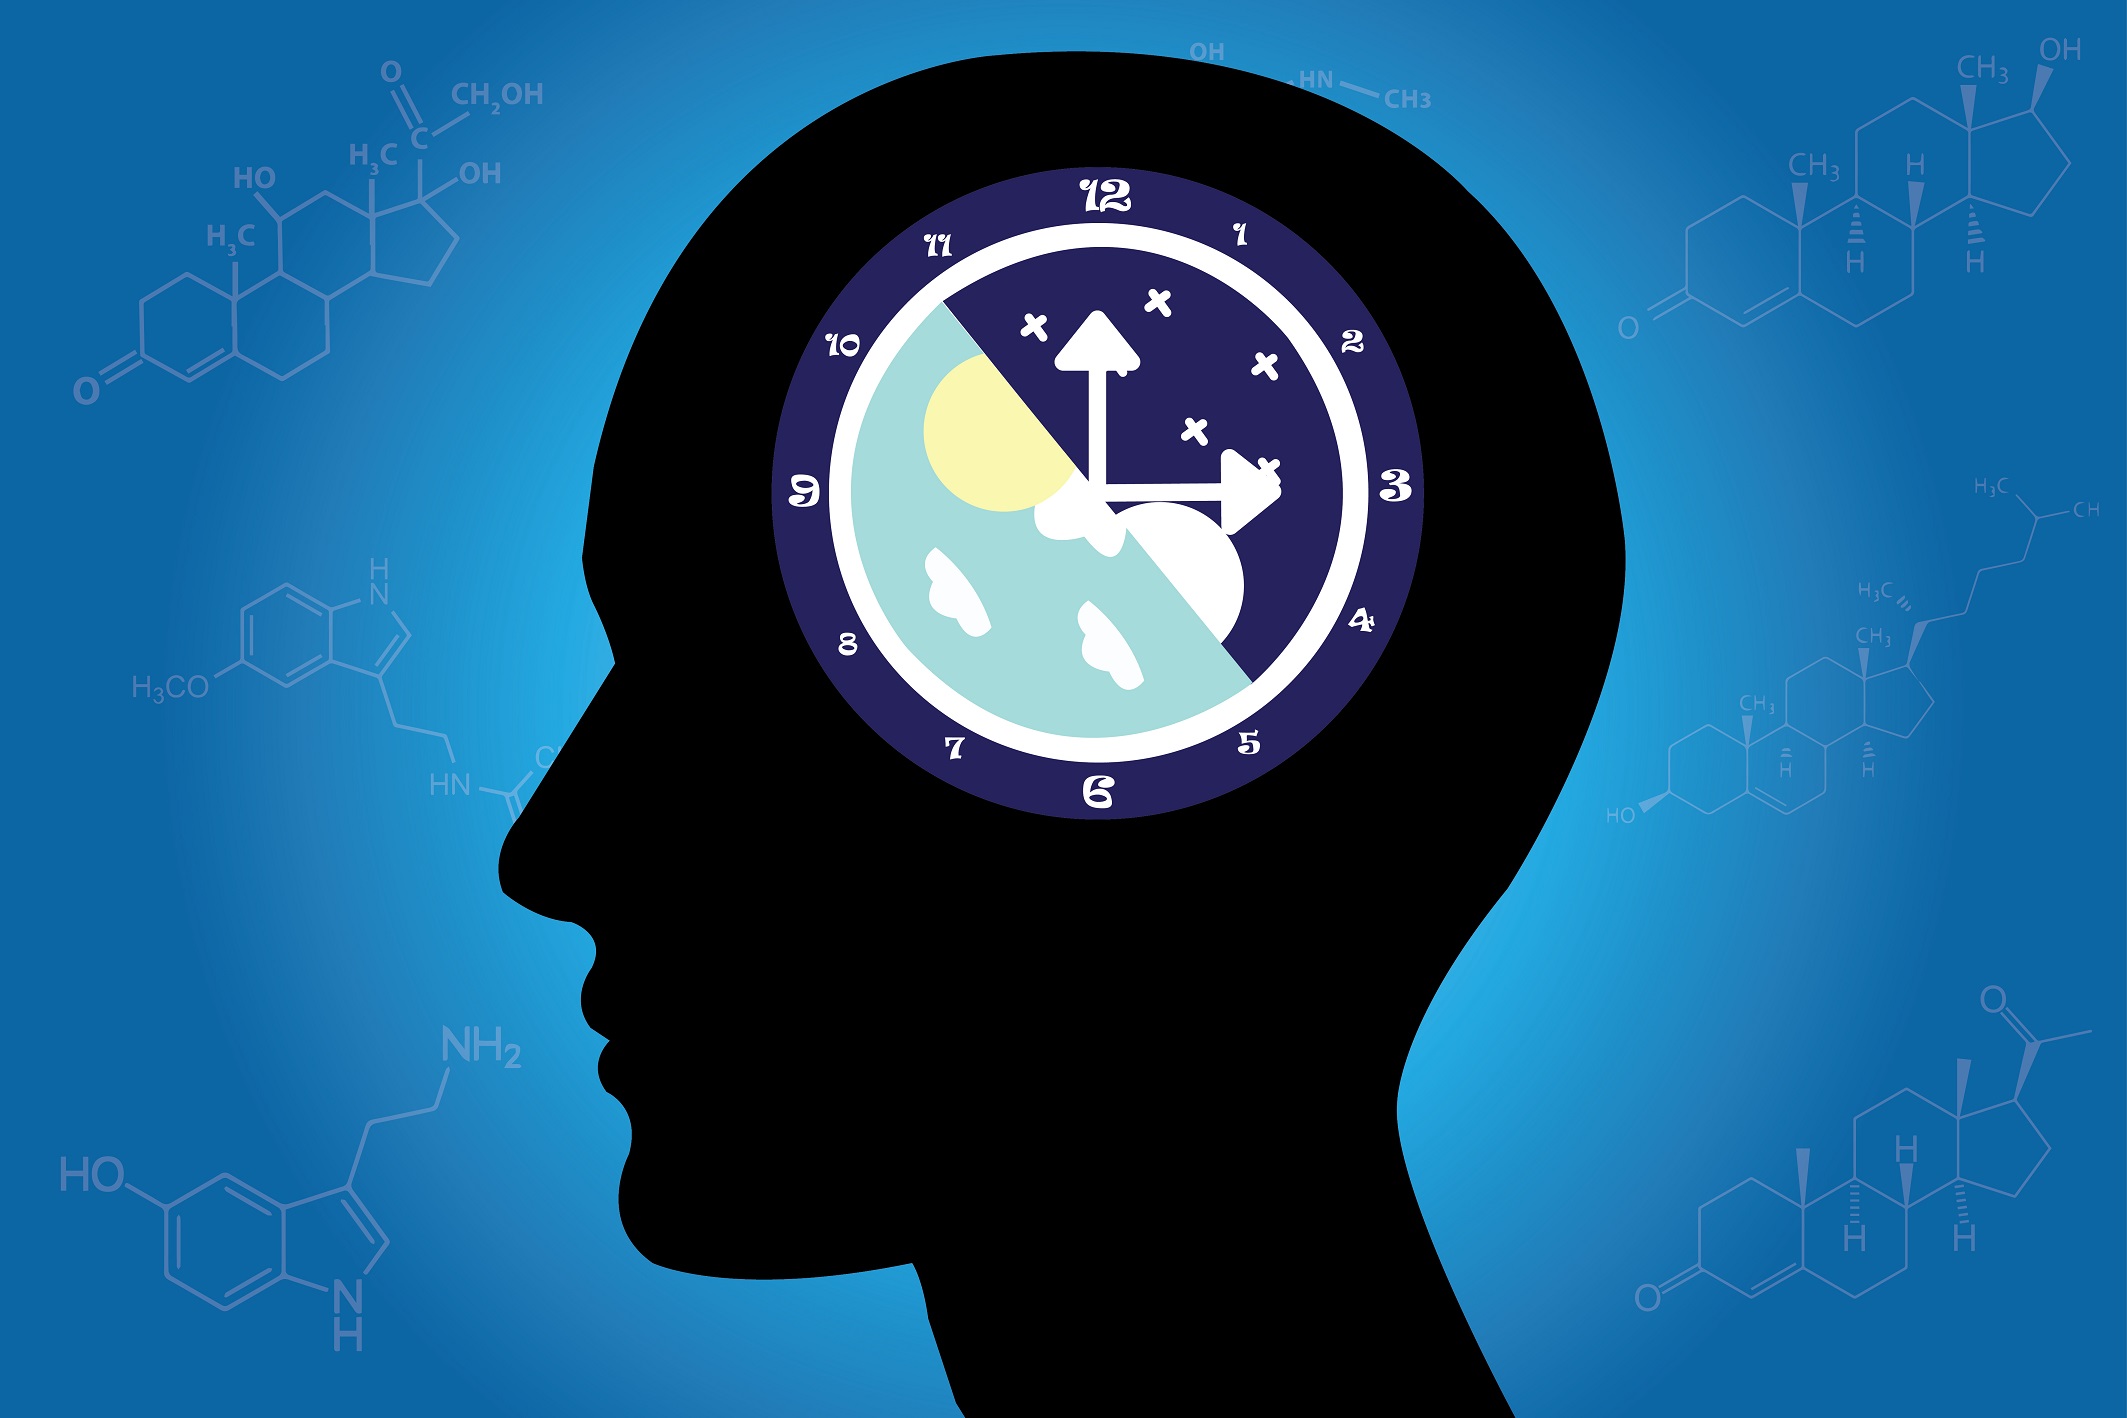 Darstellung einer inneren Uhr im Gehirn